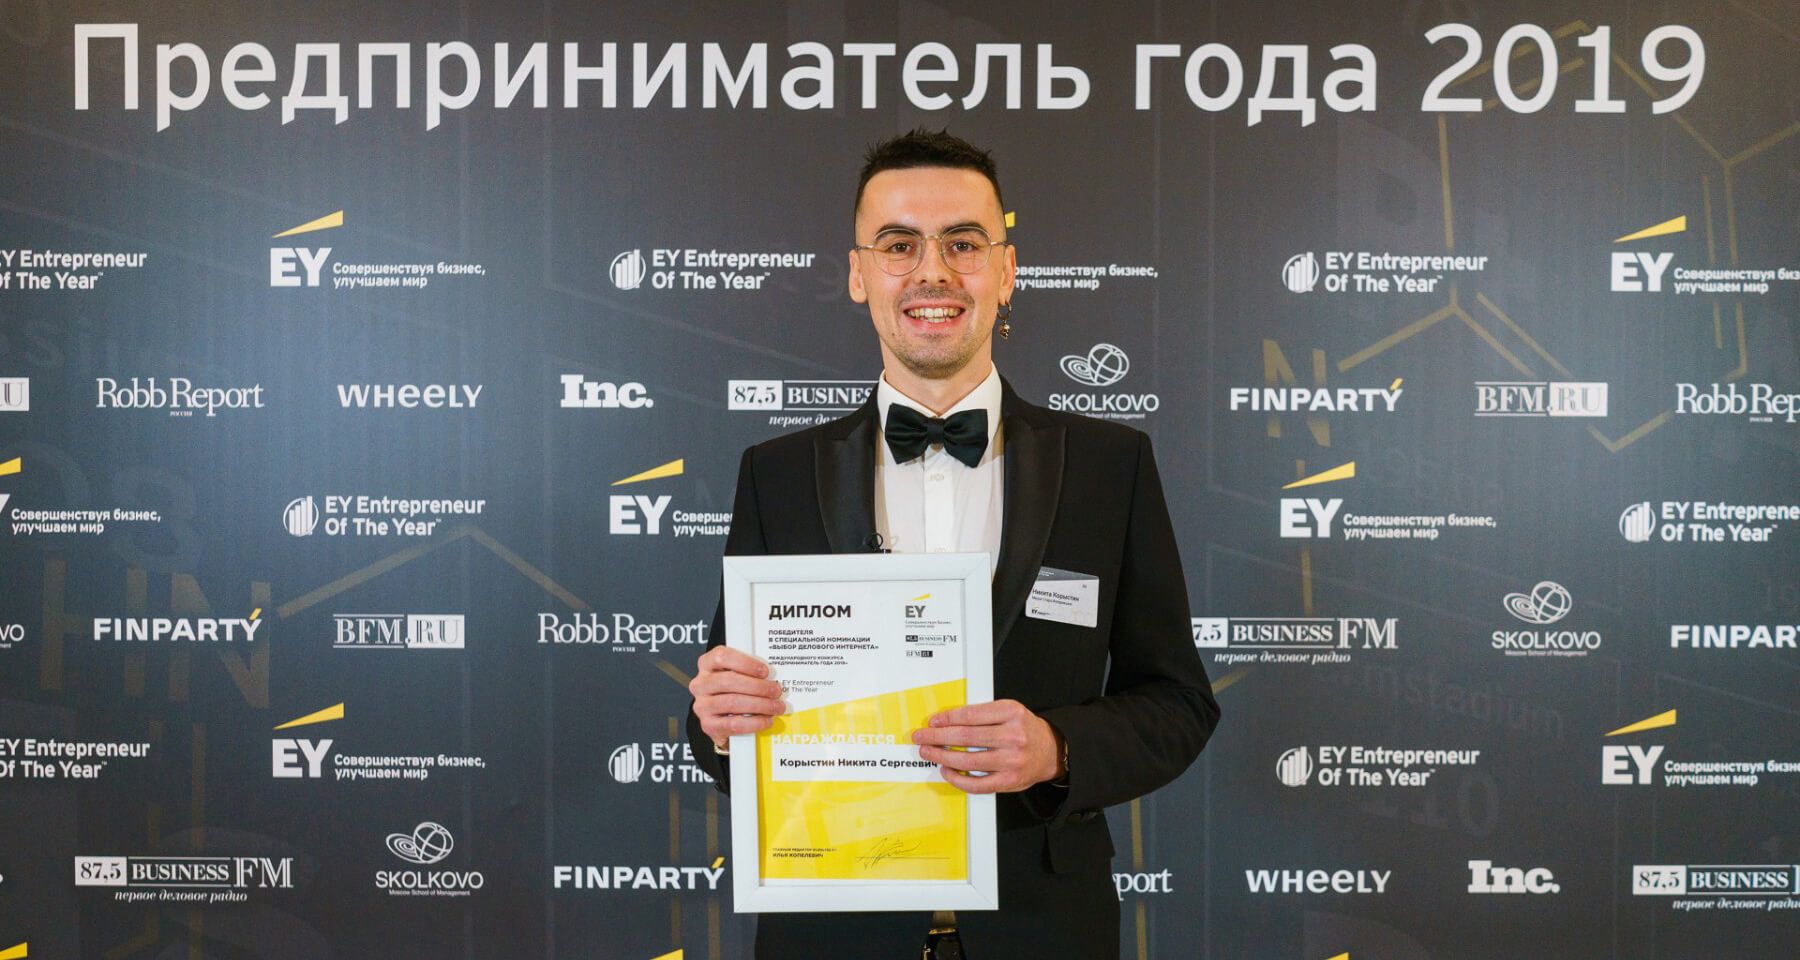 Основатель Медэк - Корыстин Никита победил в номинации "Выбор делового интернета" международного конкурса "Предприниматель года 2019" от EY.